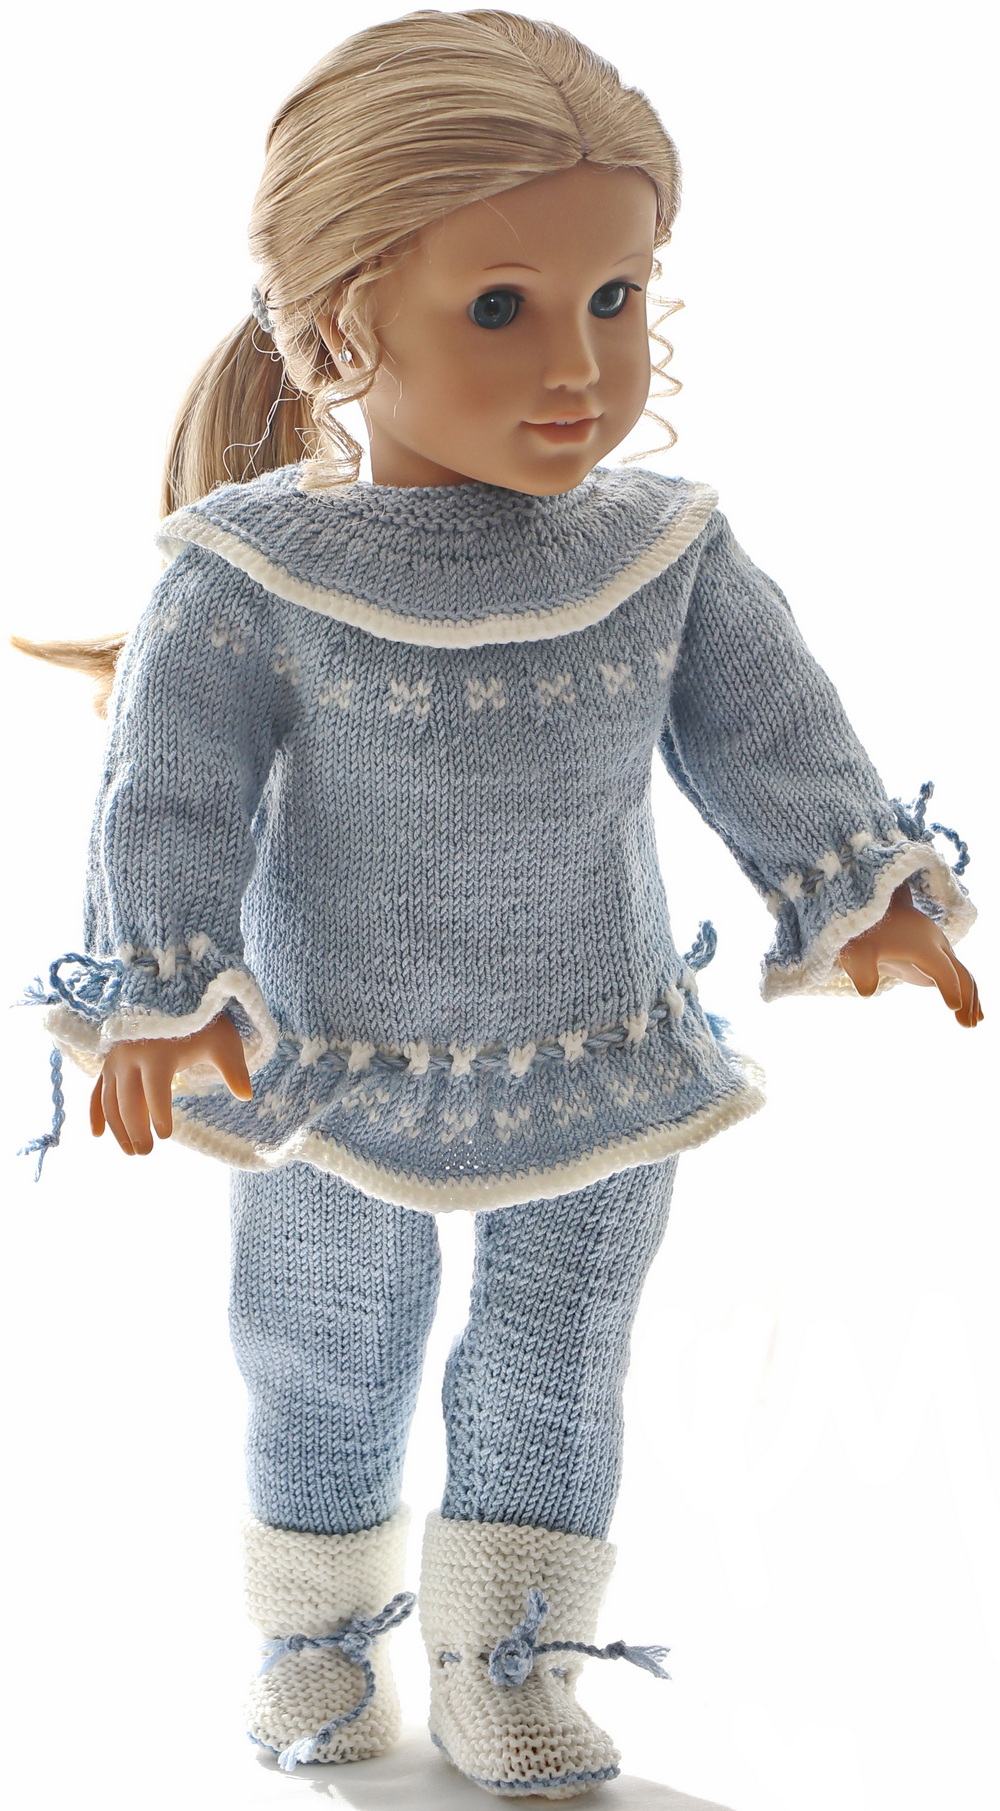 0232d-02-knitting-patterns-for-american-girl-dolls.jpg